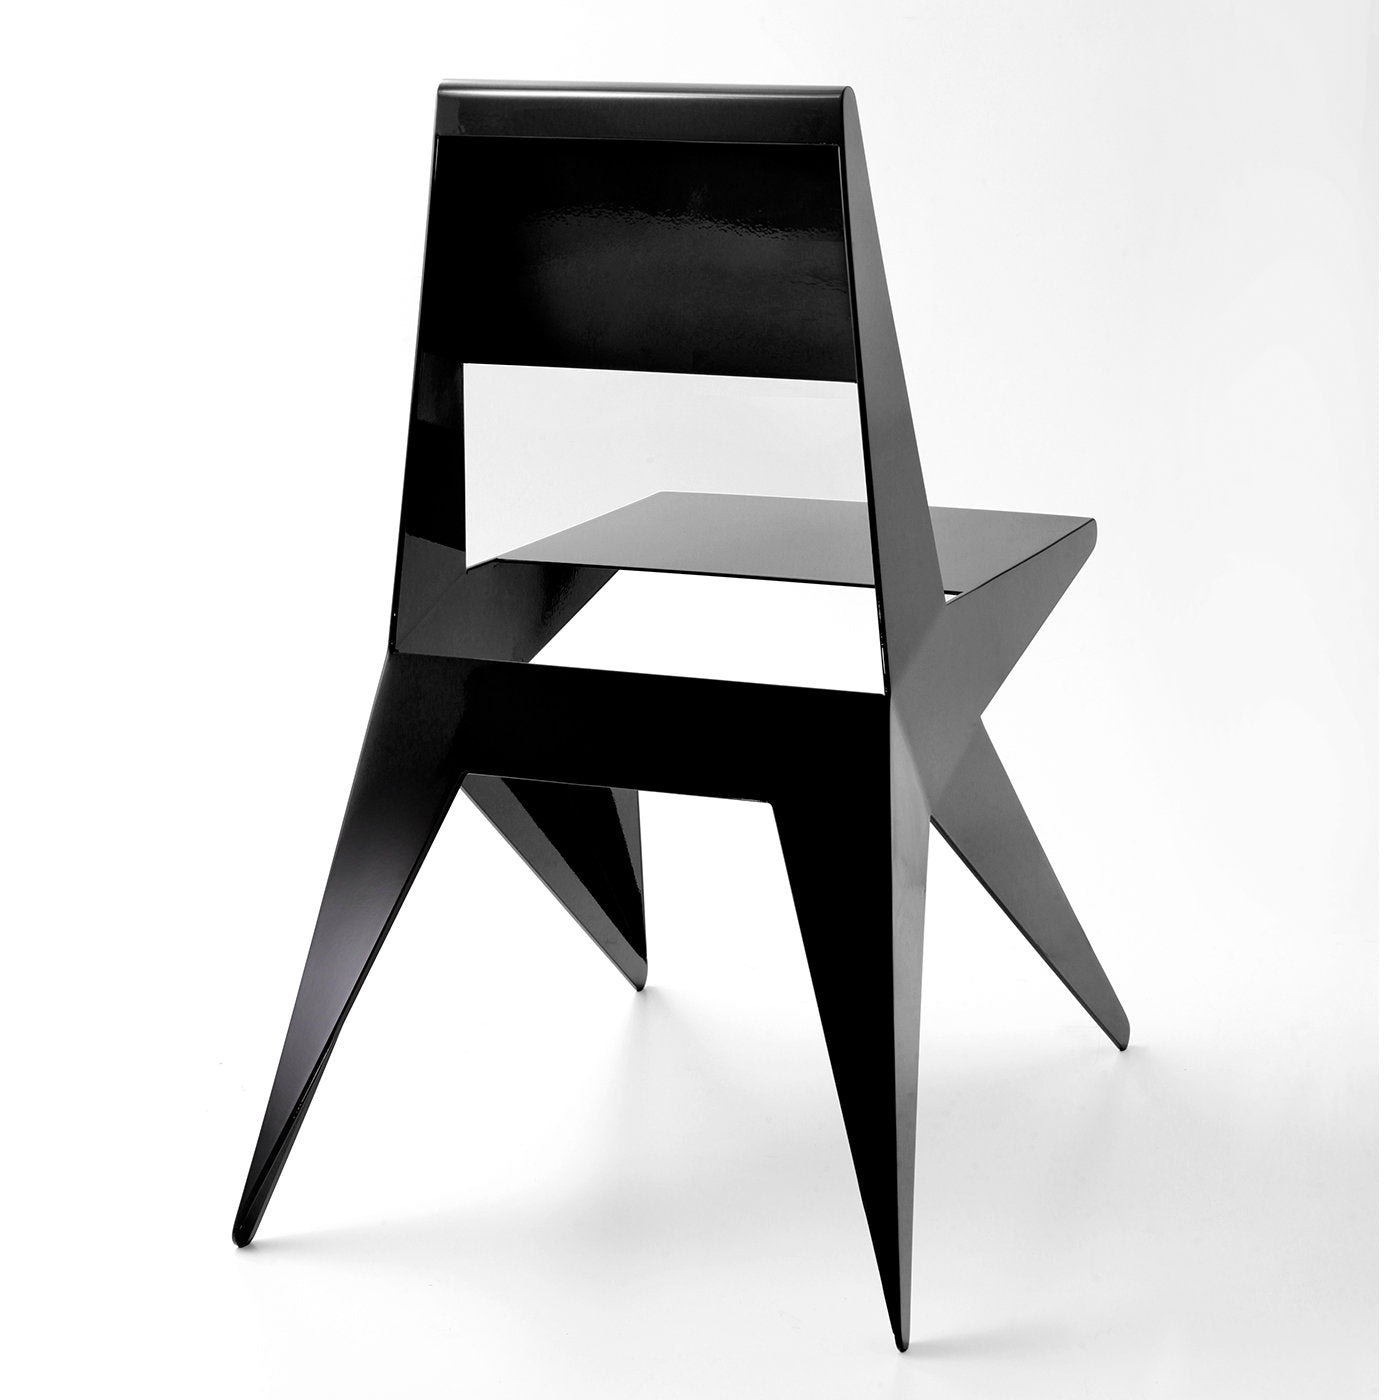 Star Black Chair by Antonio Pio Saracino - Alternative view 1